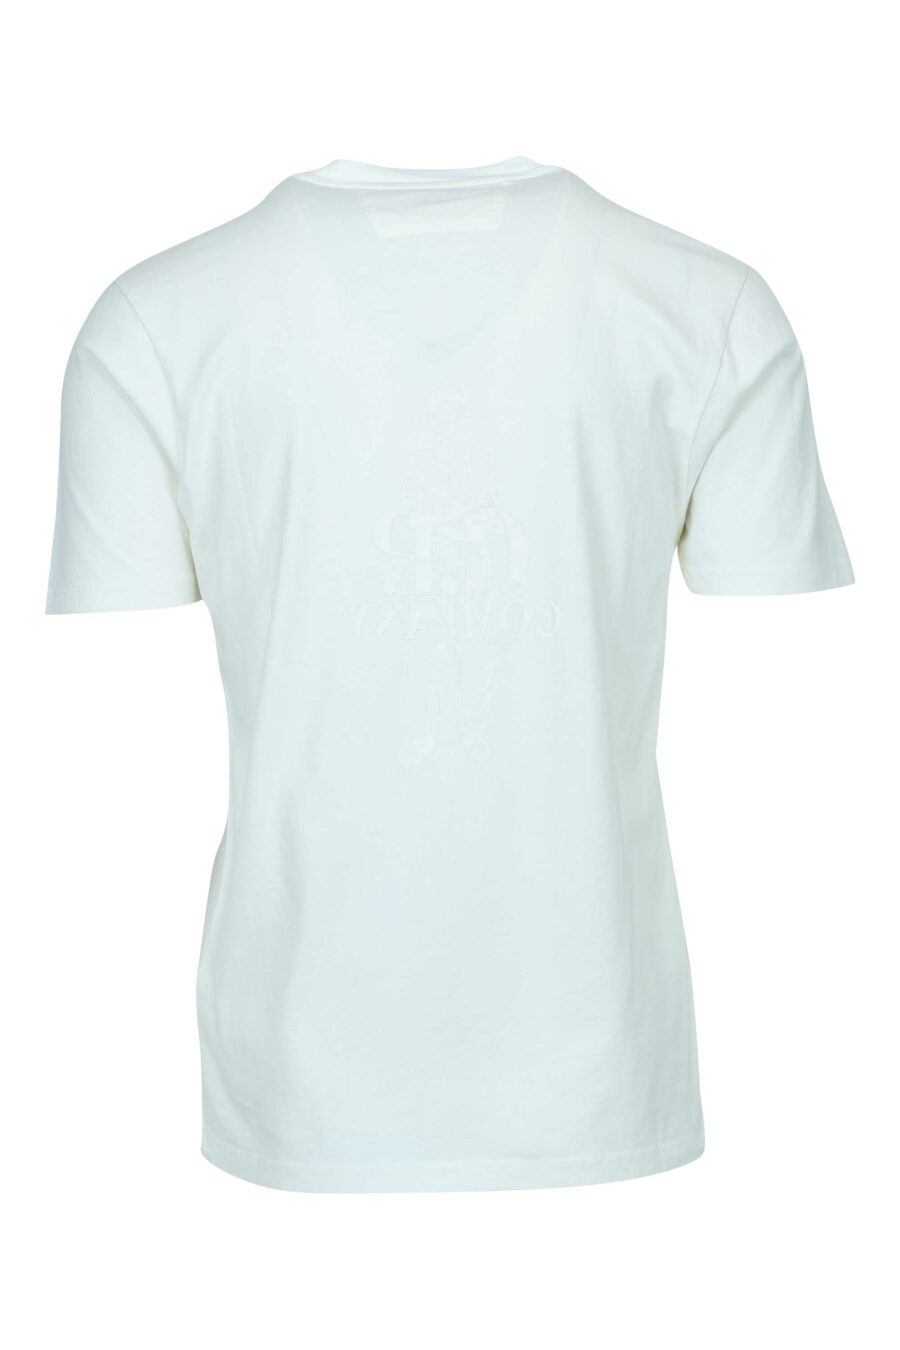 Weißes T-Shirt mit Matrosen-Maxilogo und "cp"-Logo - 7620943776478 1